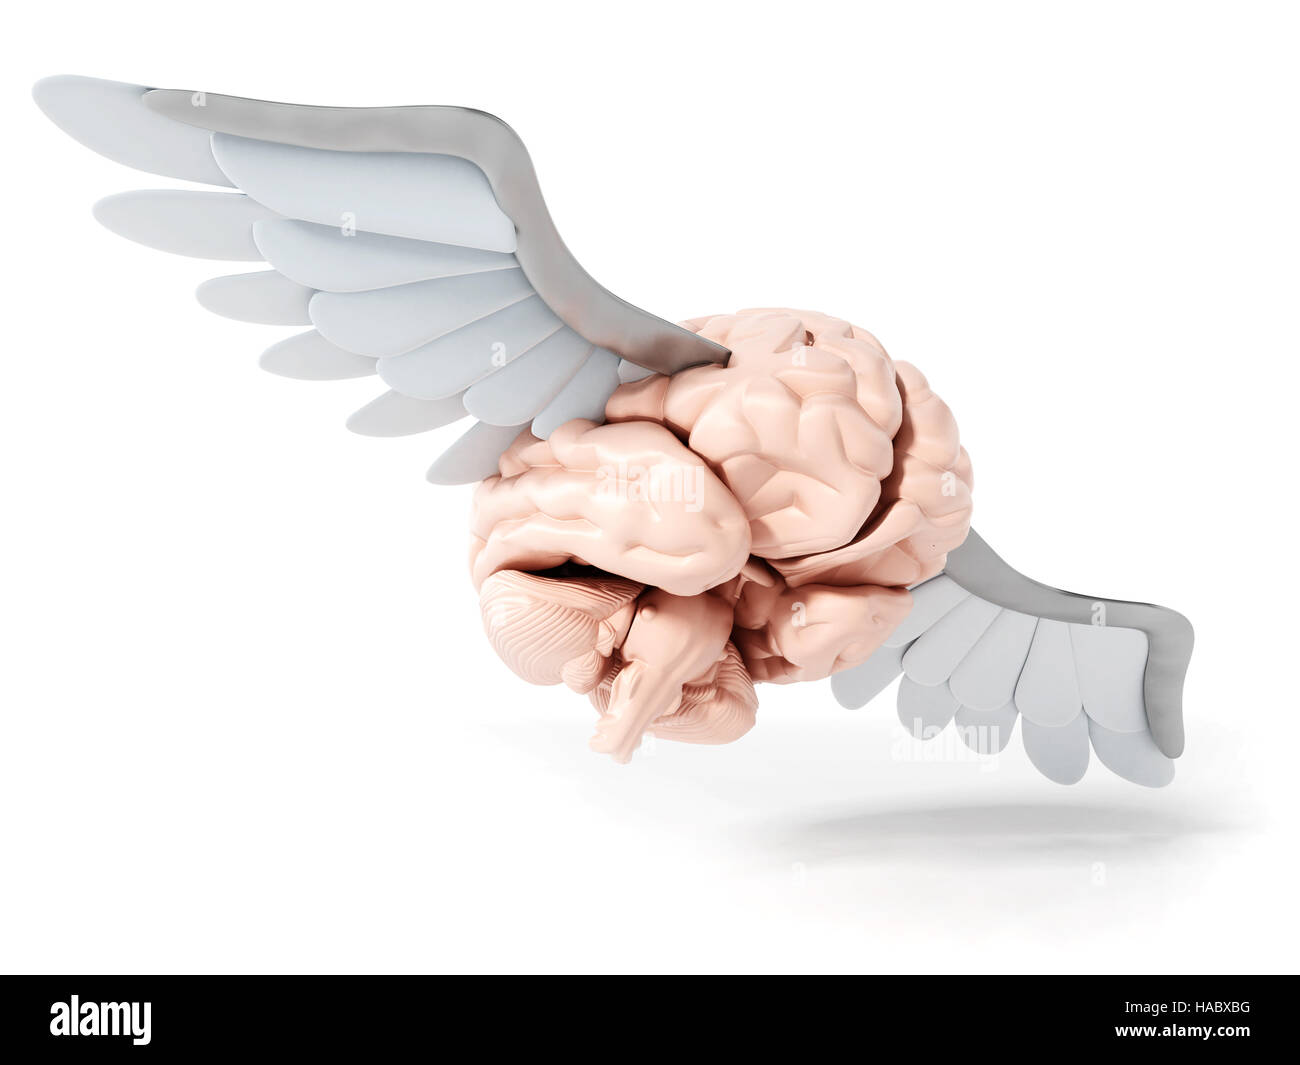 Cerebro volando con alas blancas. Ilustración 3D. Foto de stock